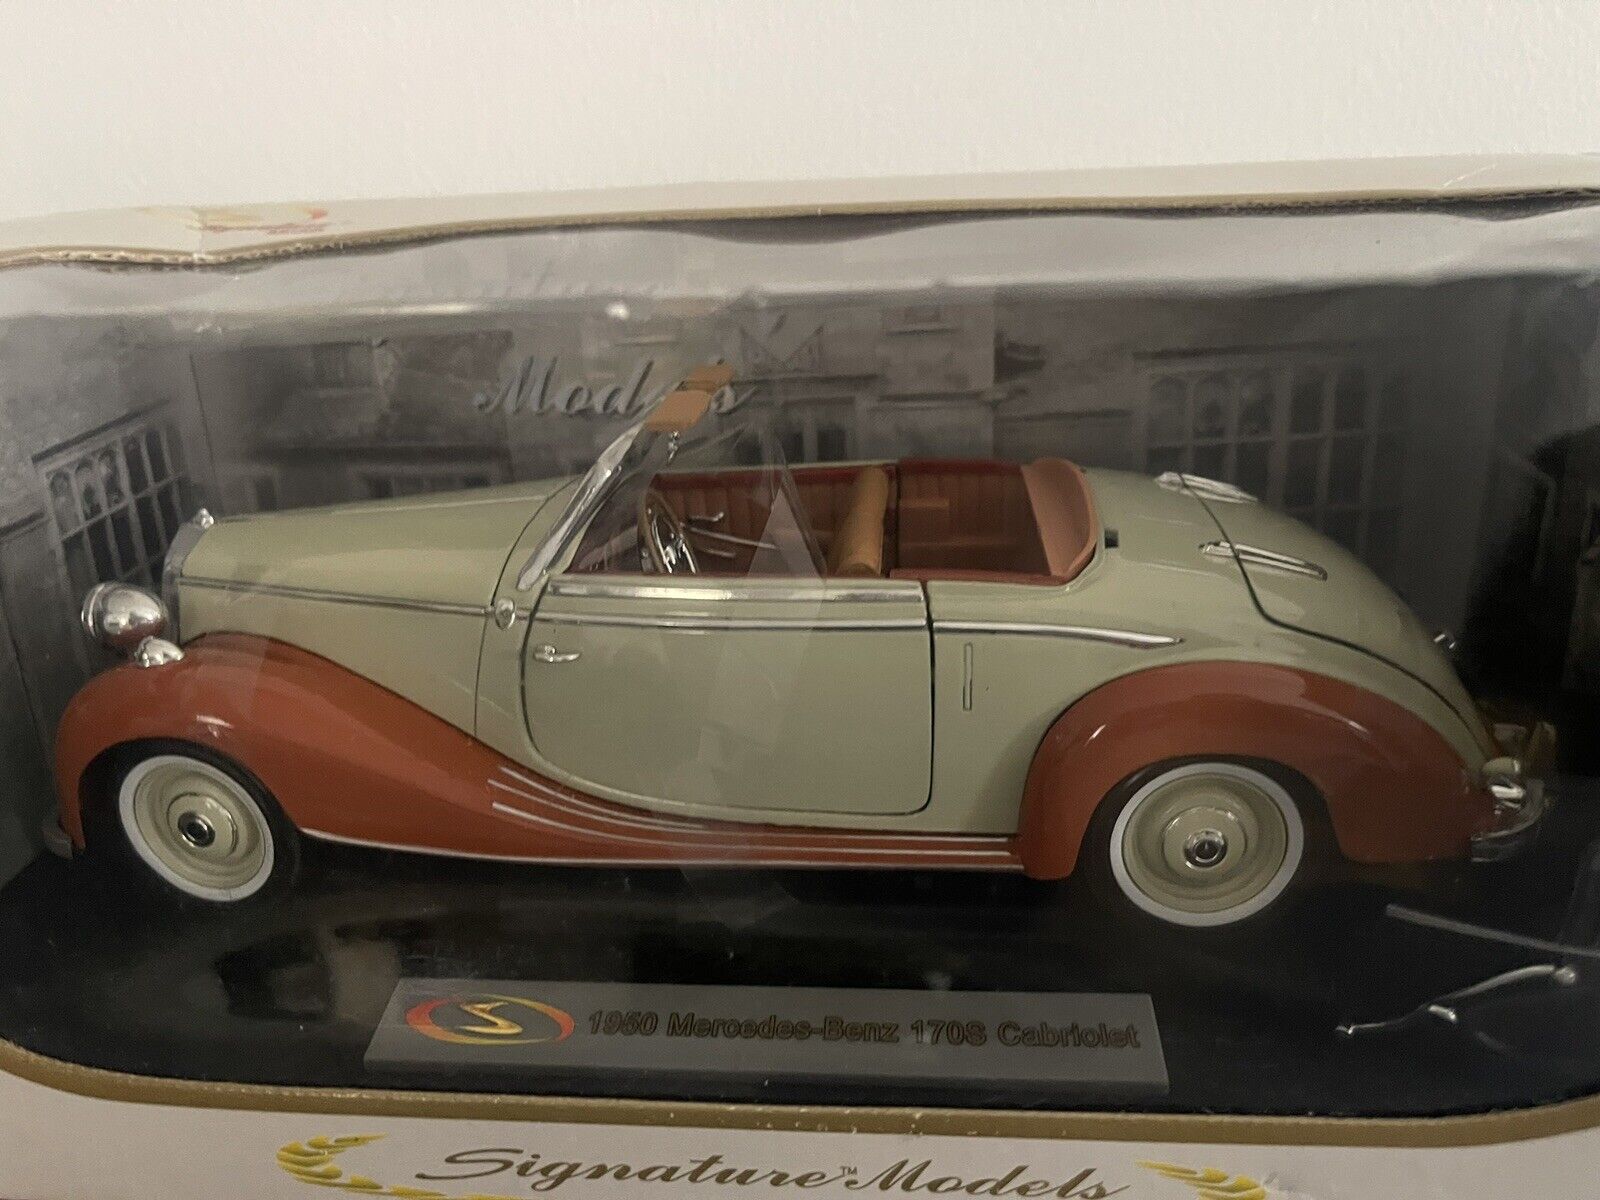 Signature Models Limited 1950 Mercedes Benz 170s Cabriolet